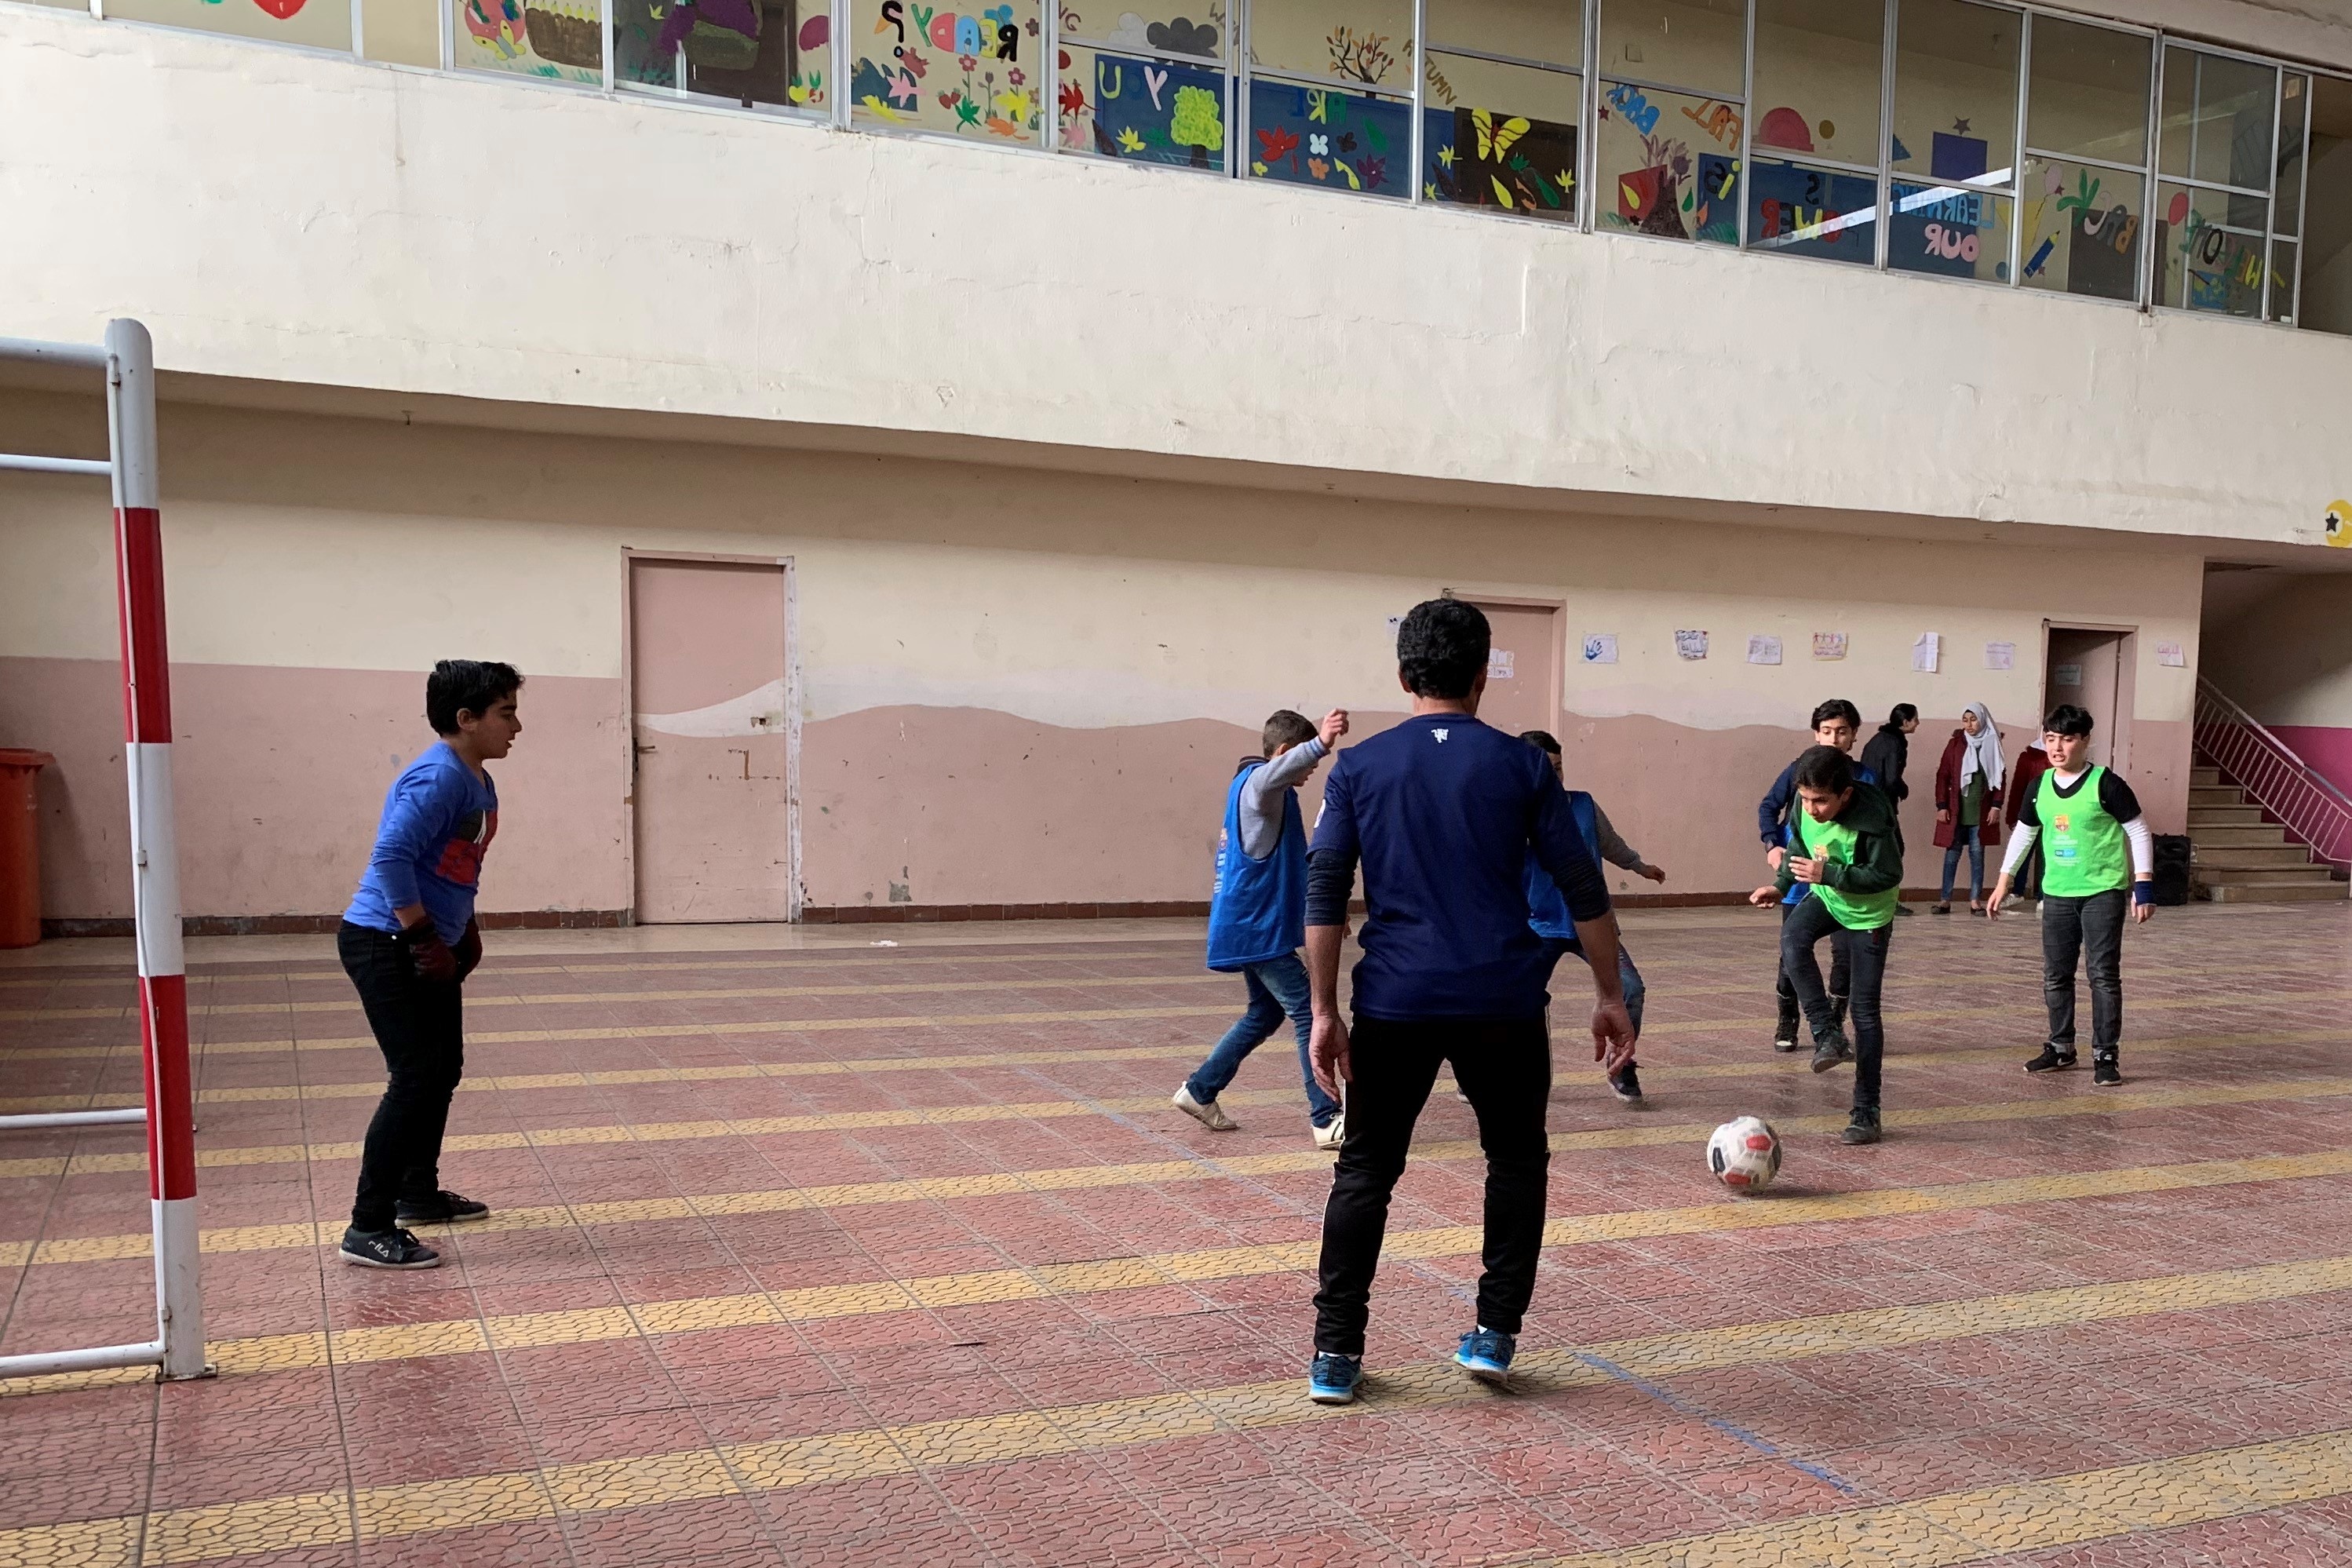 mehrere Jungen spielen Fußball in einer Turnhalle